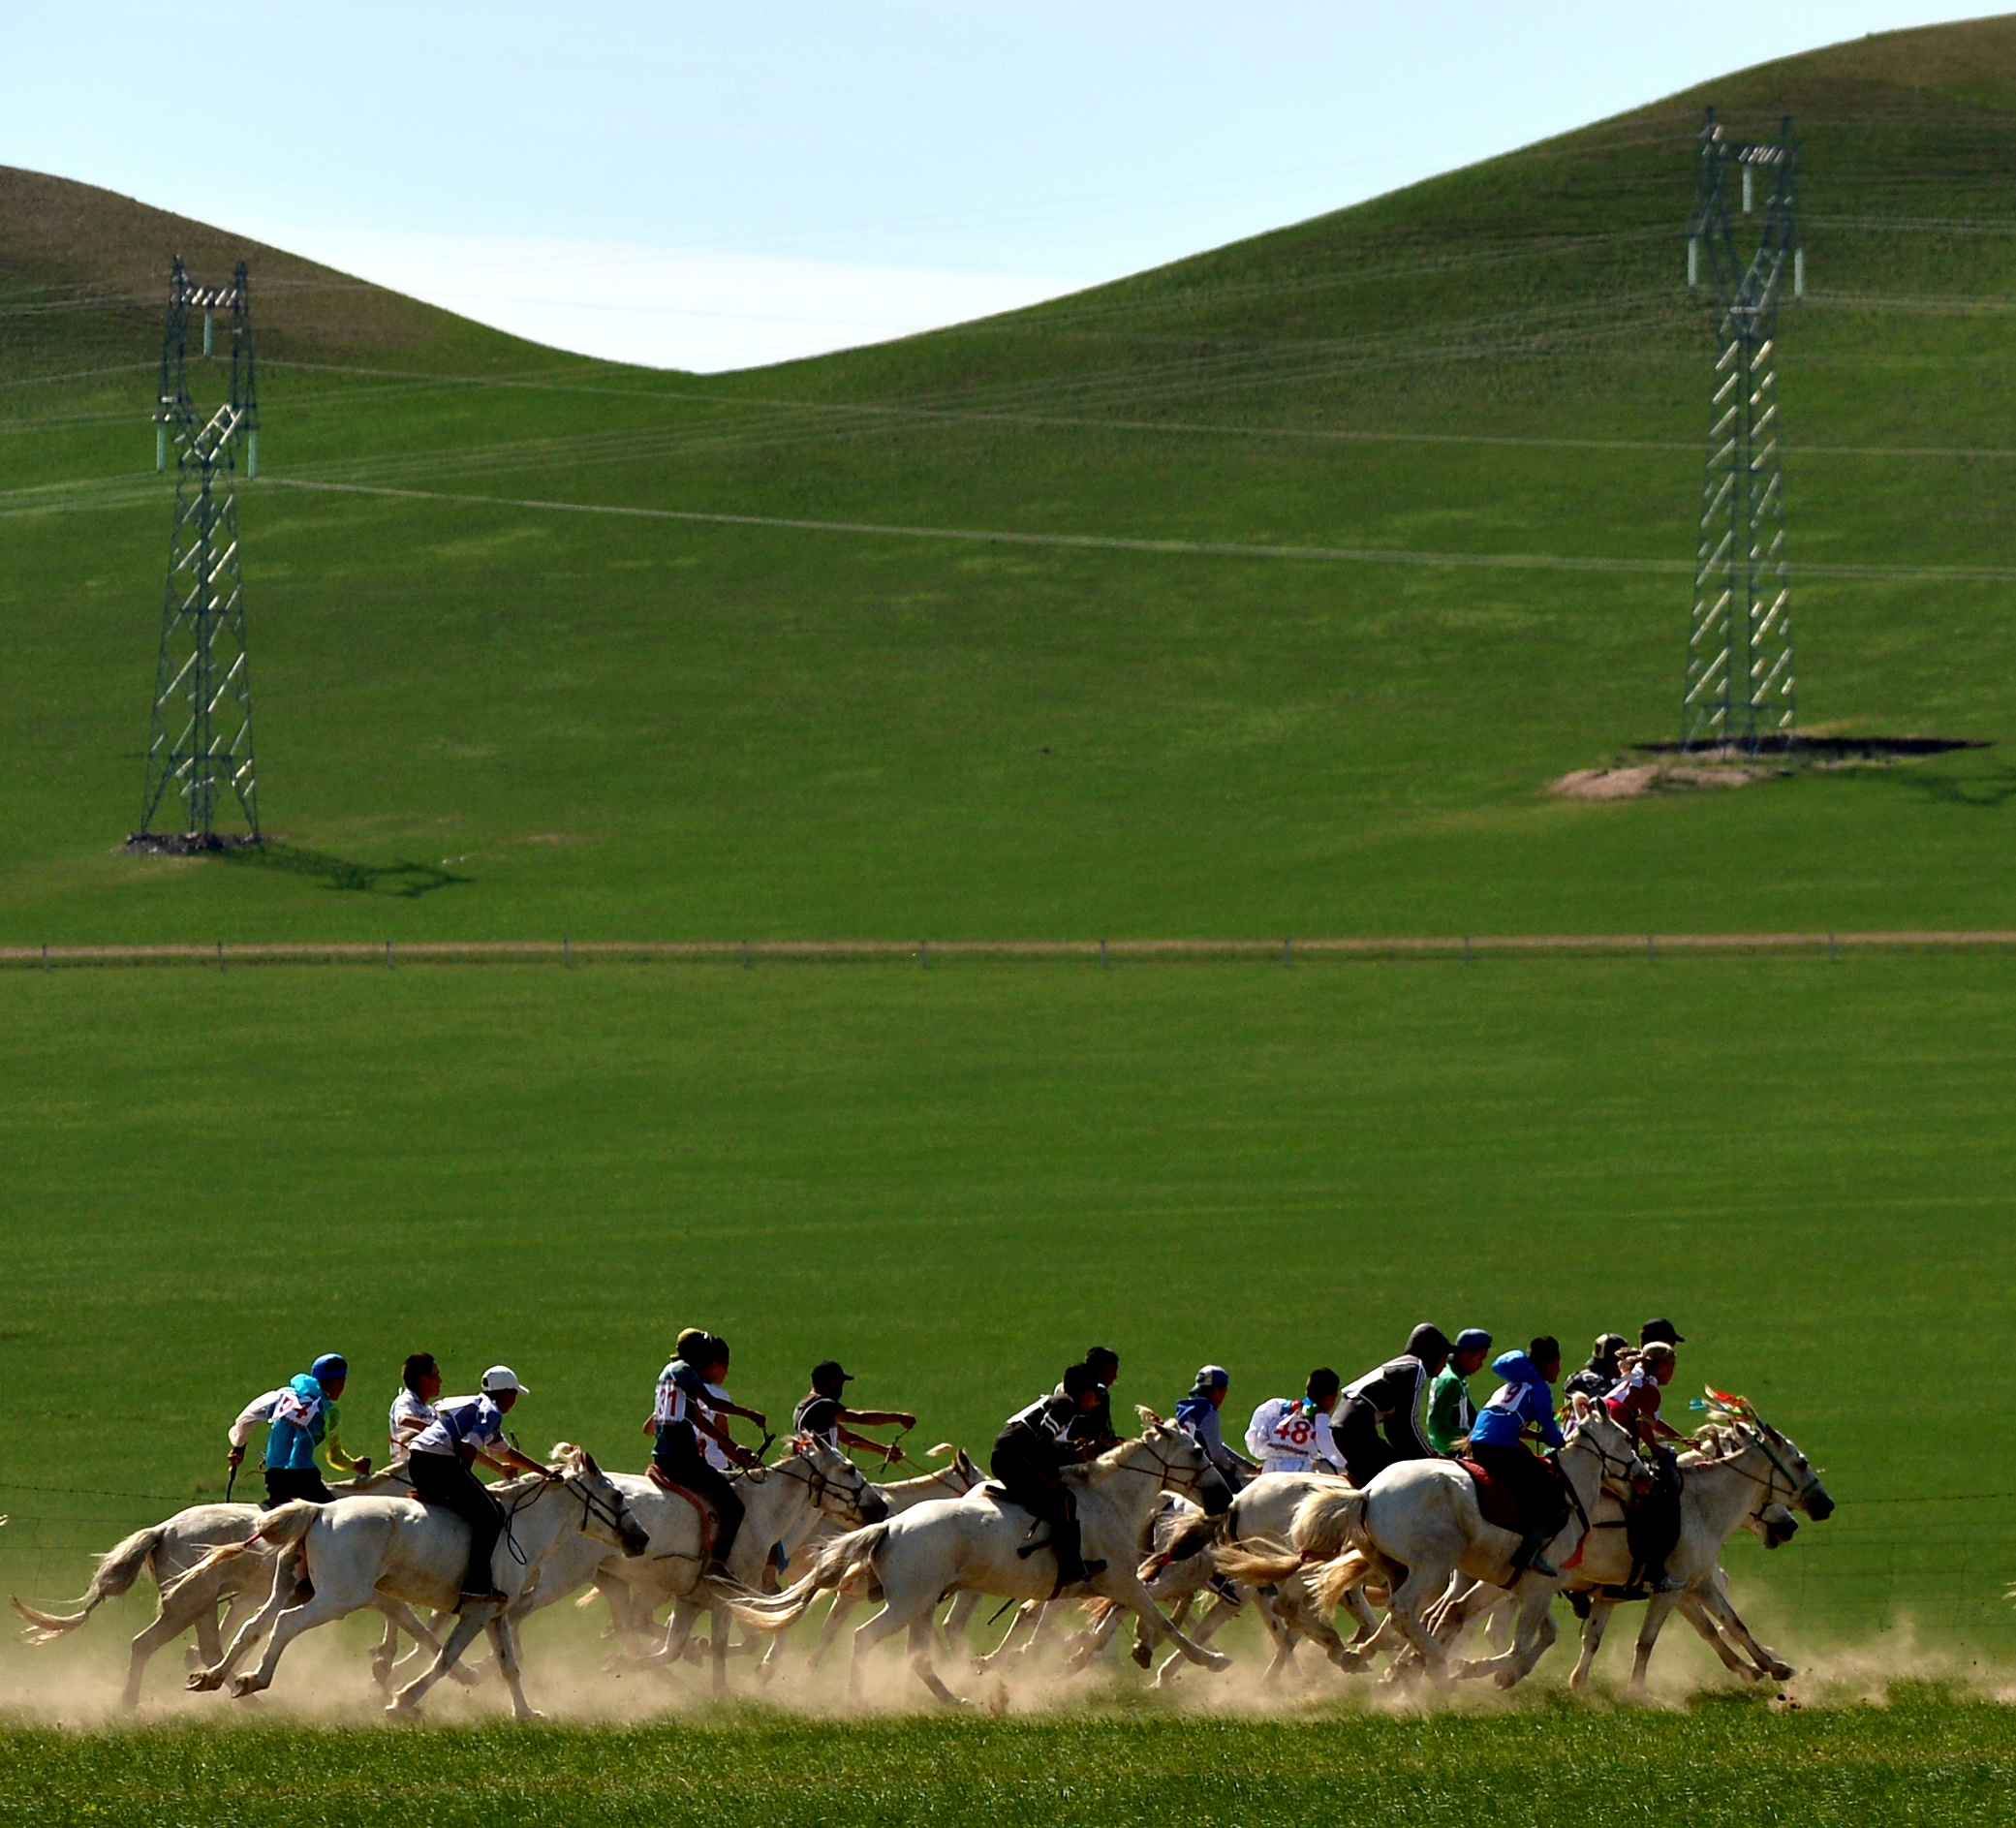 内蒙古西乌旗蒙古汗城旅游景区-西乌珠穆沁旗旅游攻略-游记-去哪儿攻略